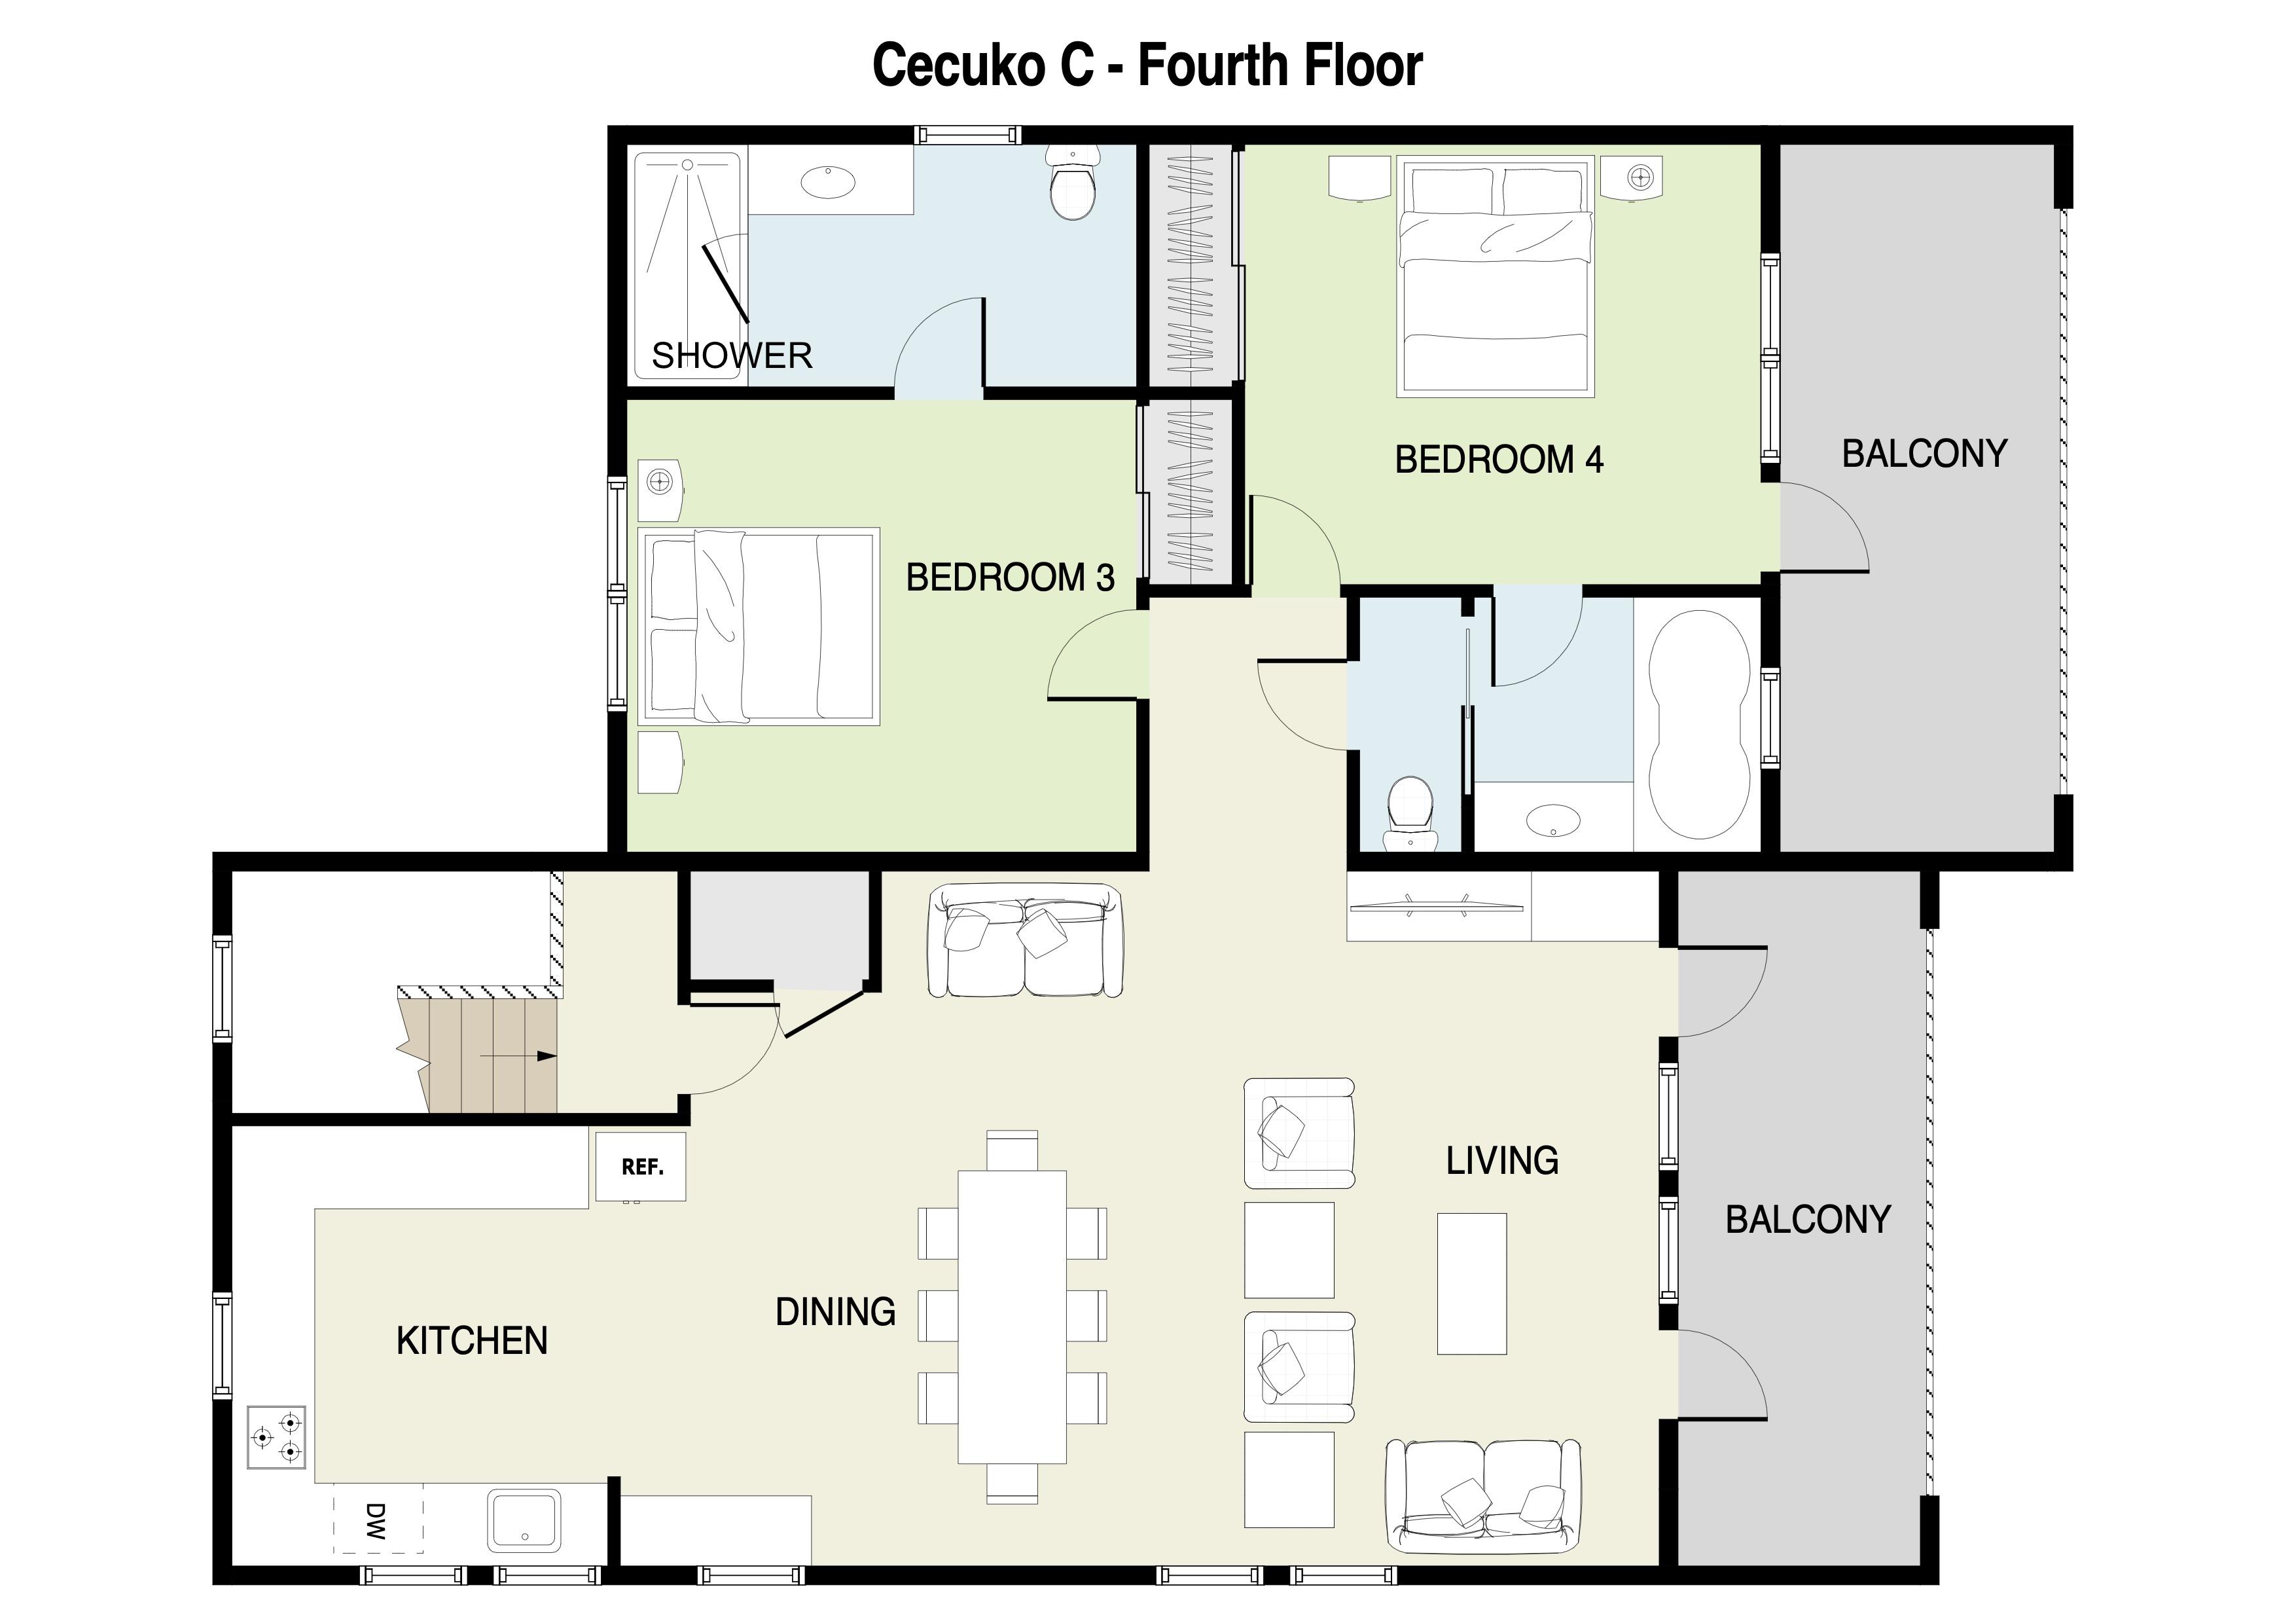 Cecuko C 4th Floor Plans